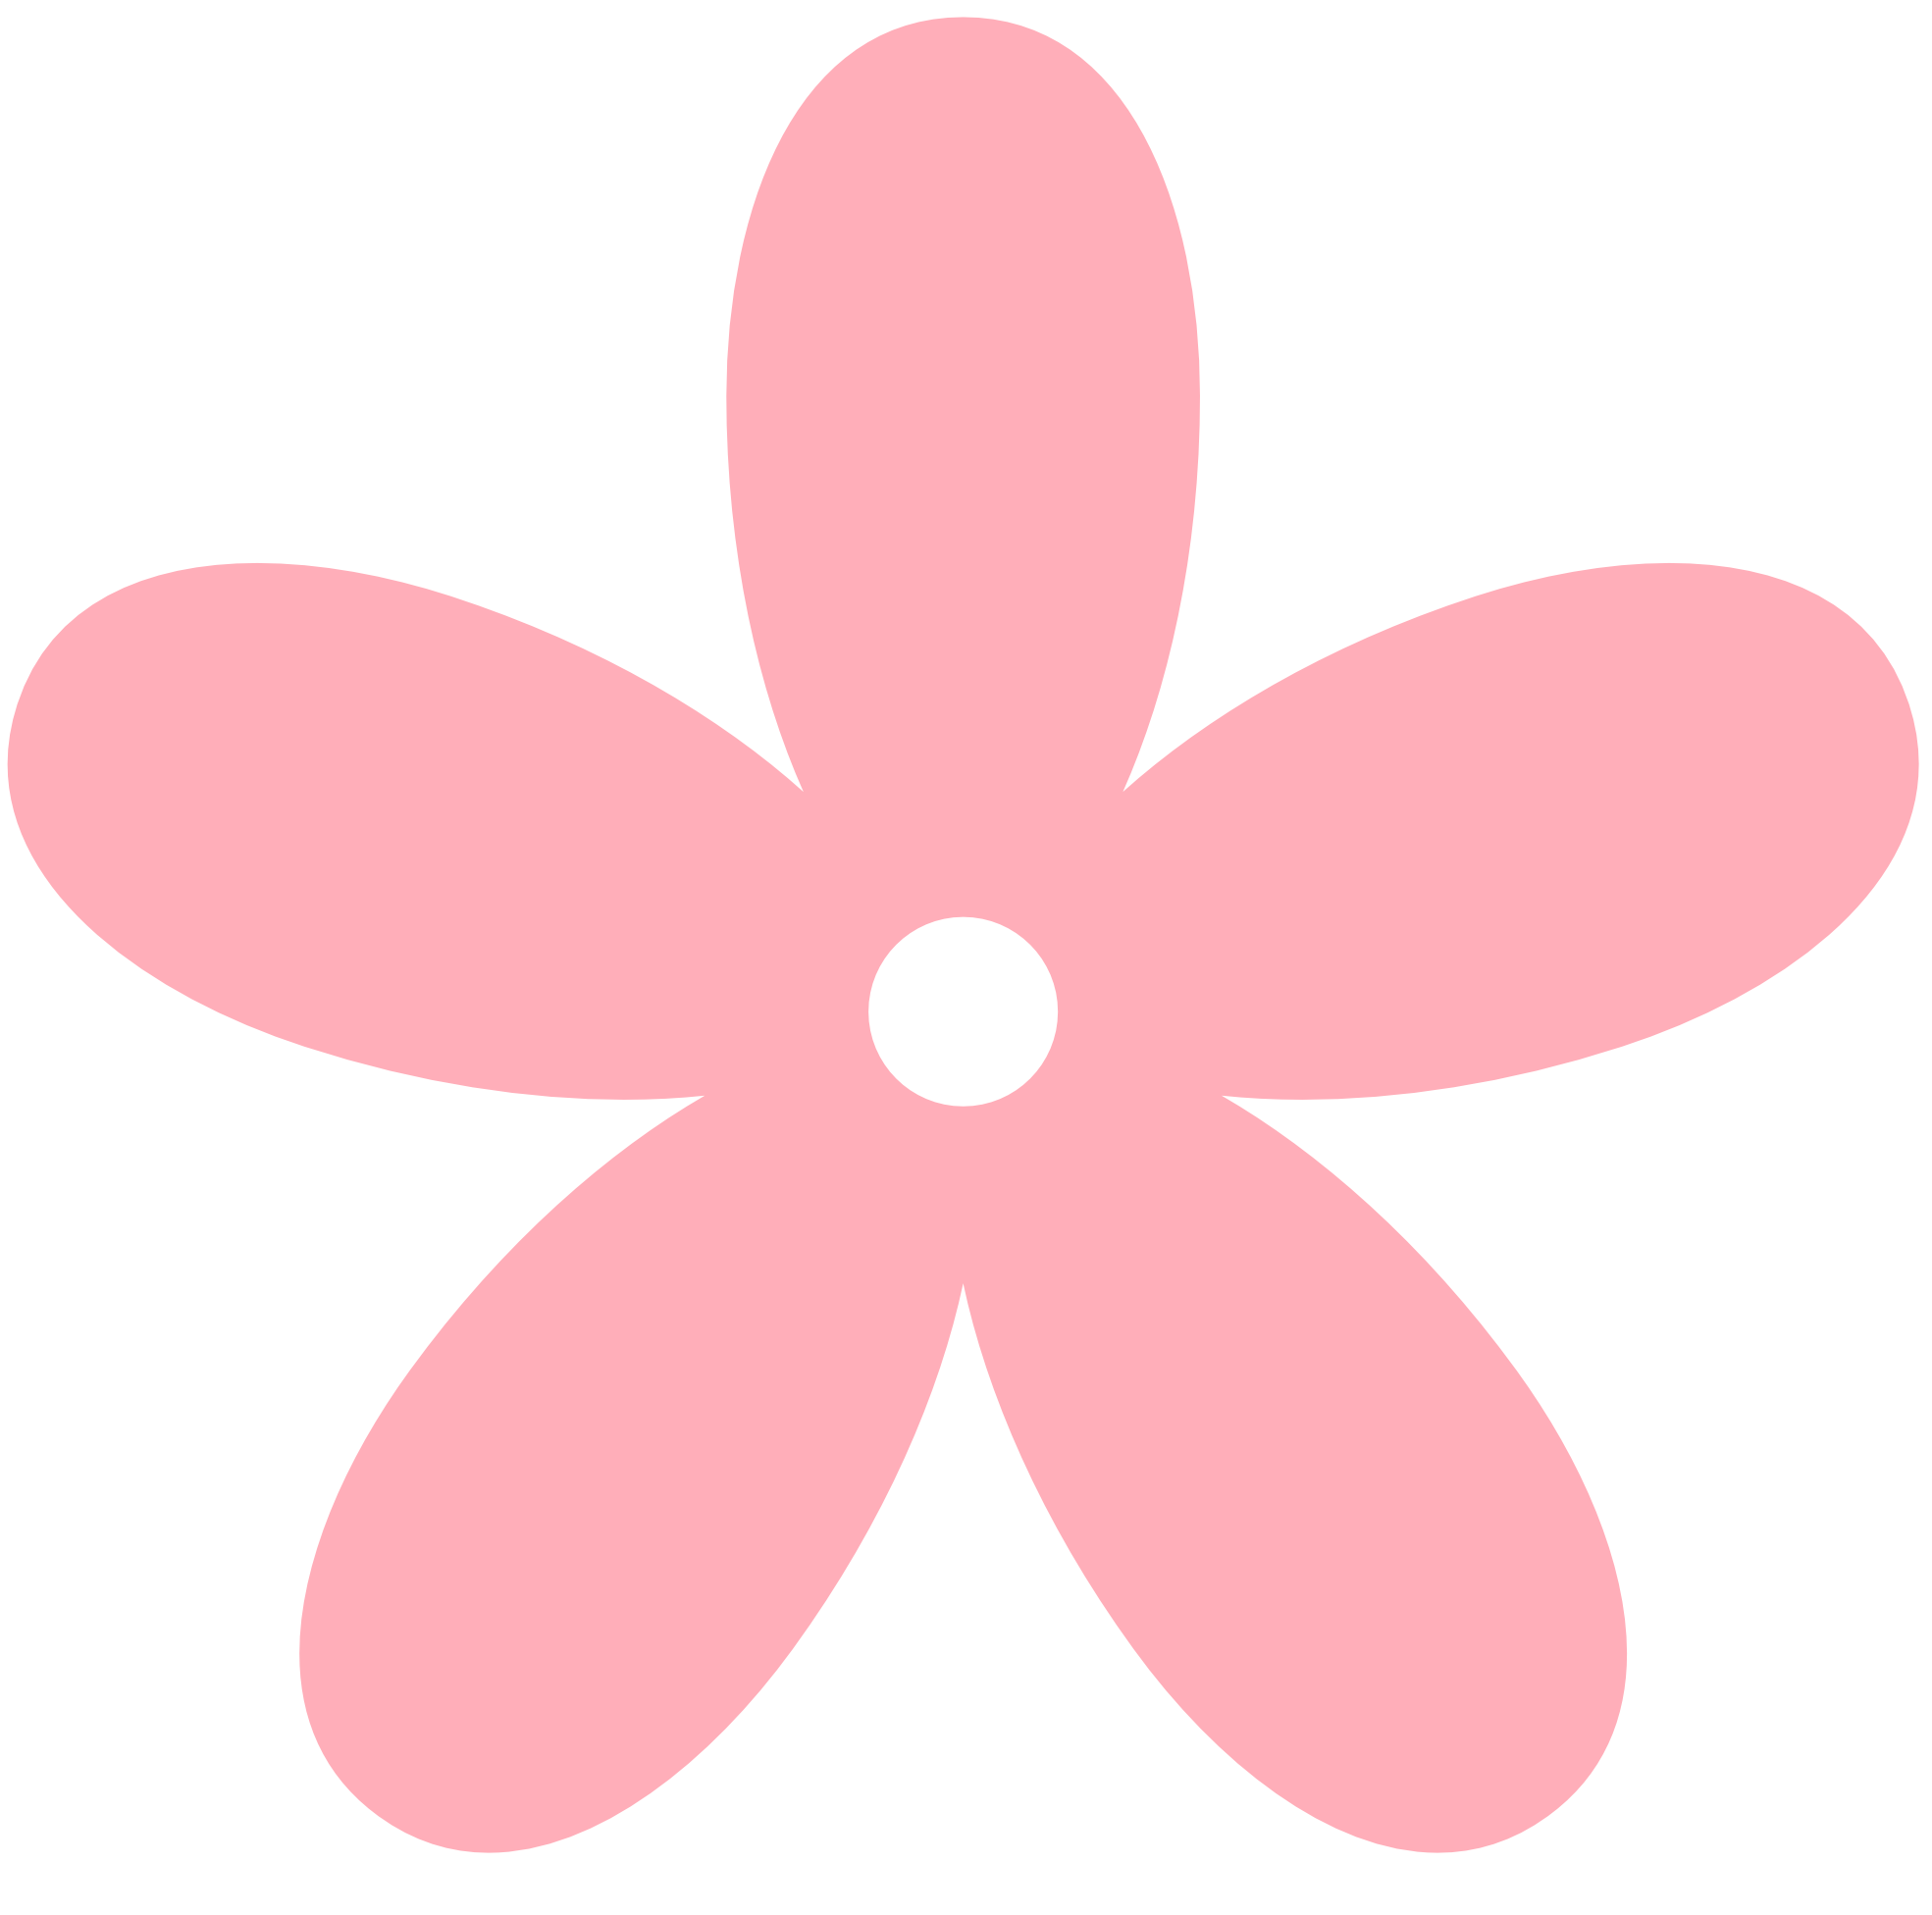 Light pink flower clipart